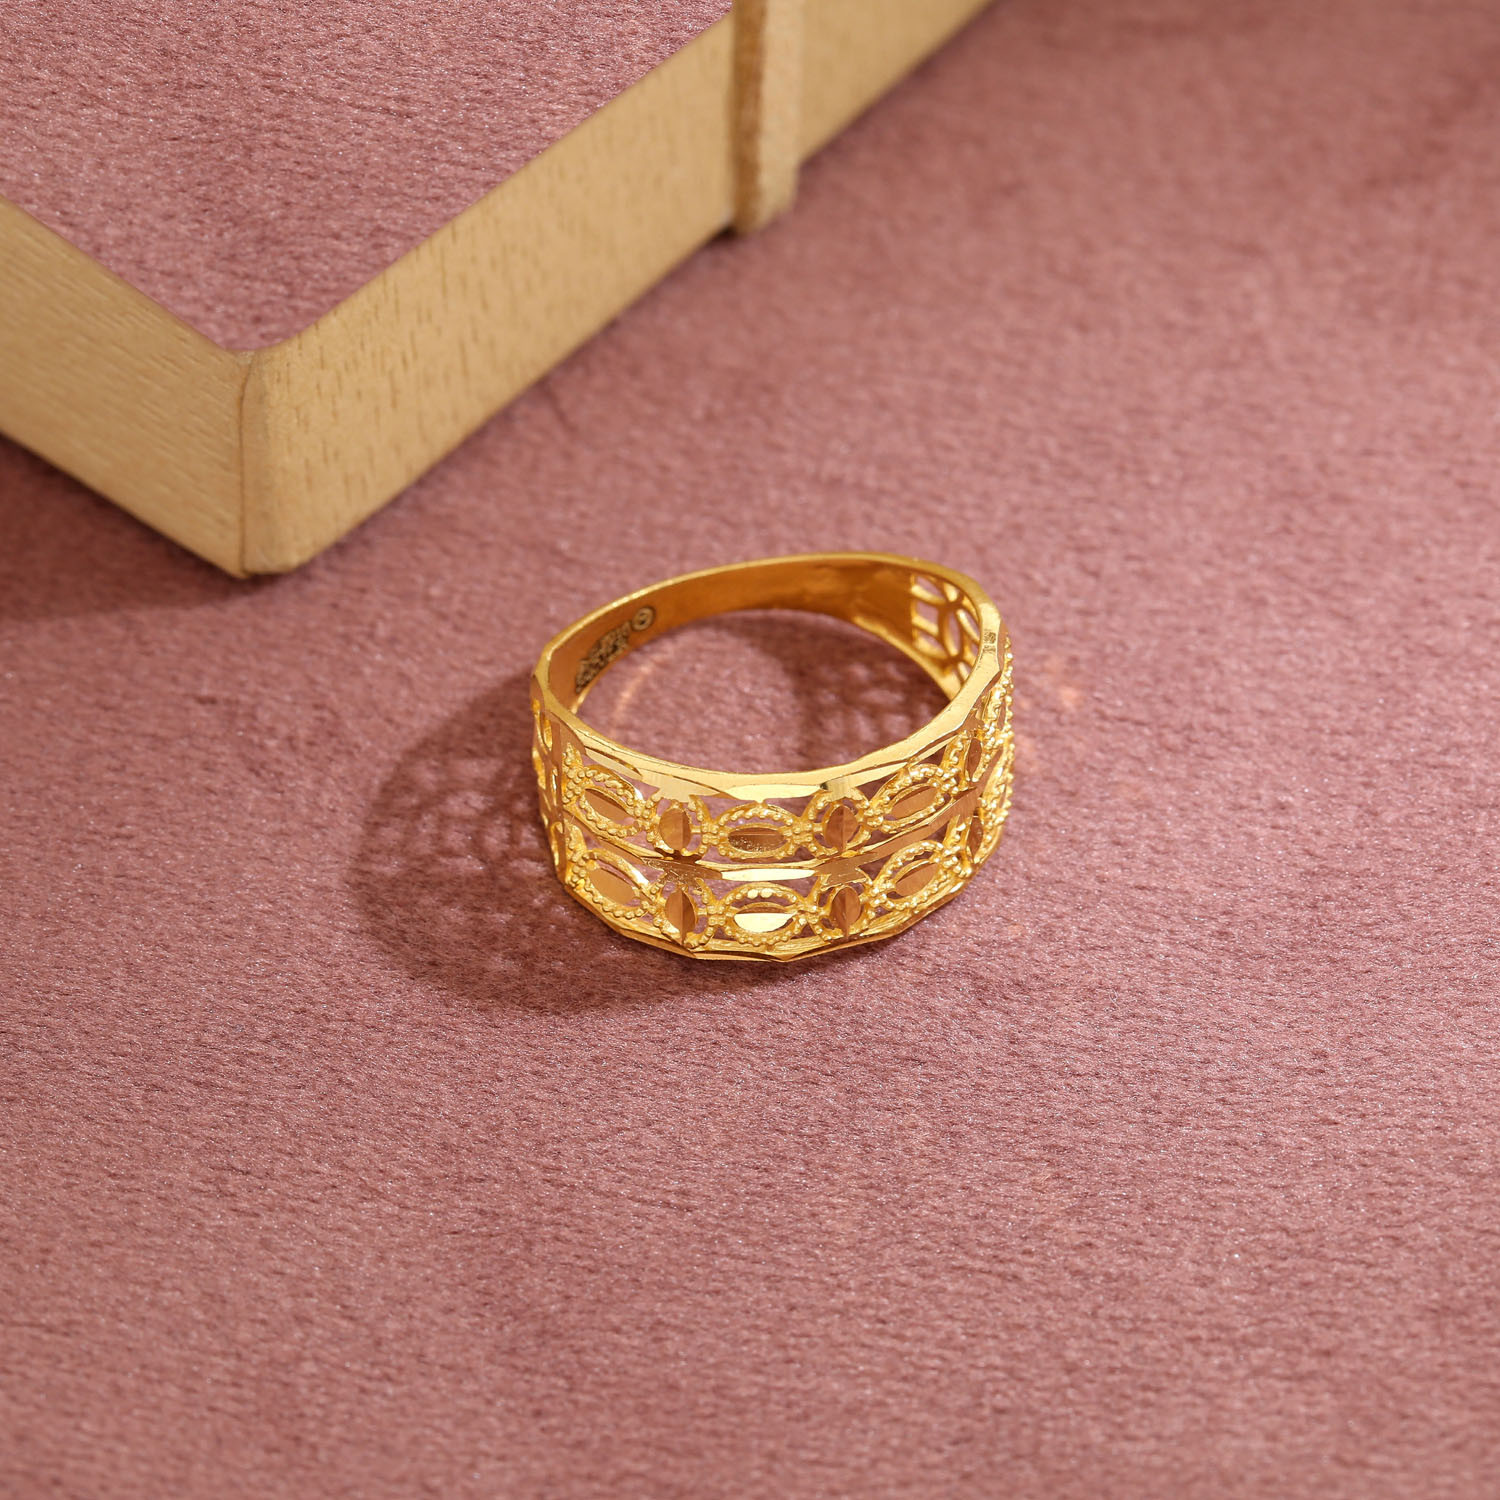 Malabar Gold & Diamonds Malabar Gold and Diamonds 22k (916) Yellow Gold Ring  for Women : Amazon.in: Fashion